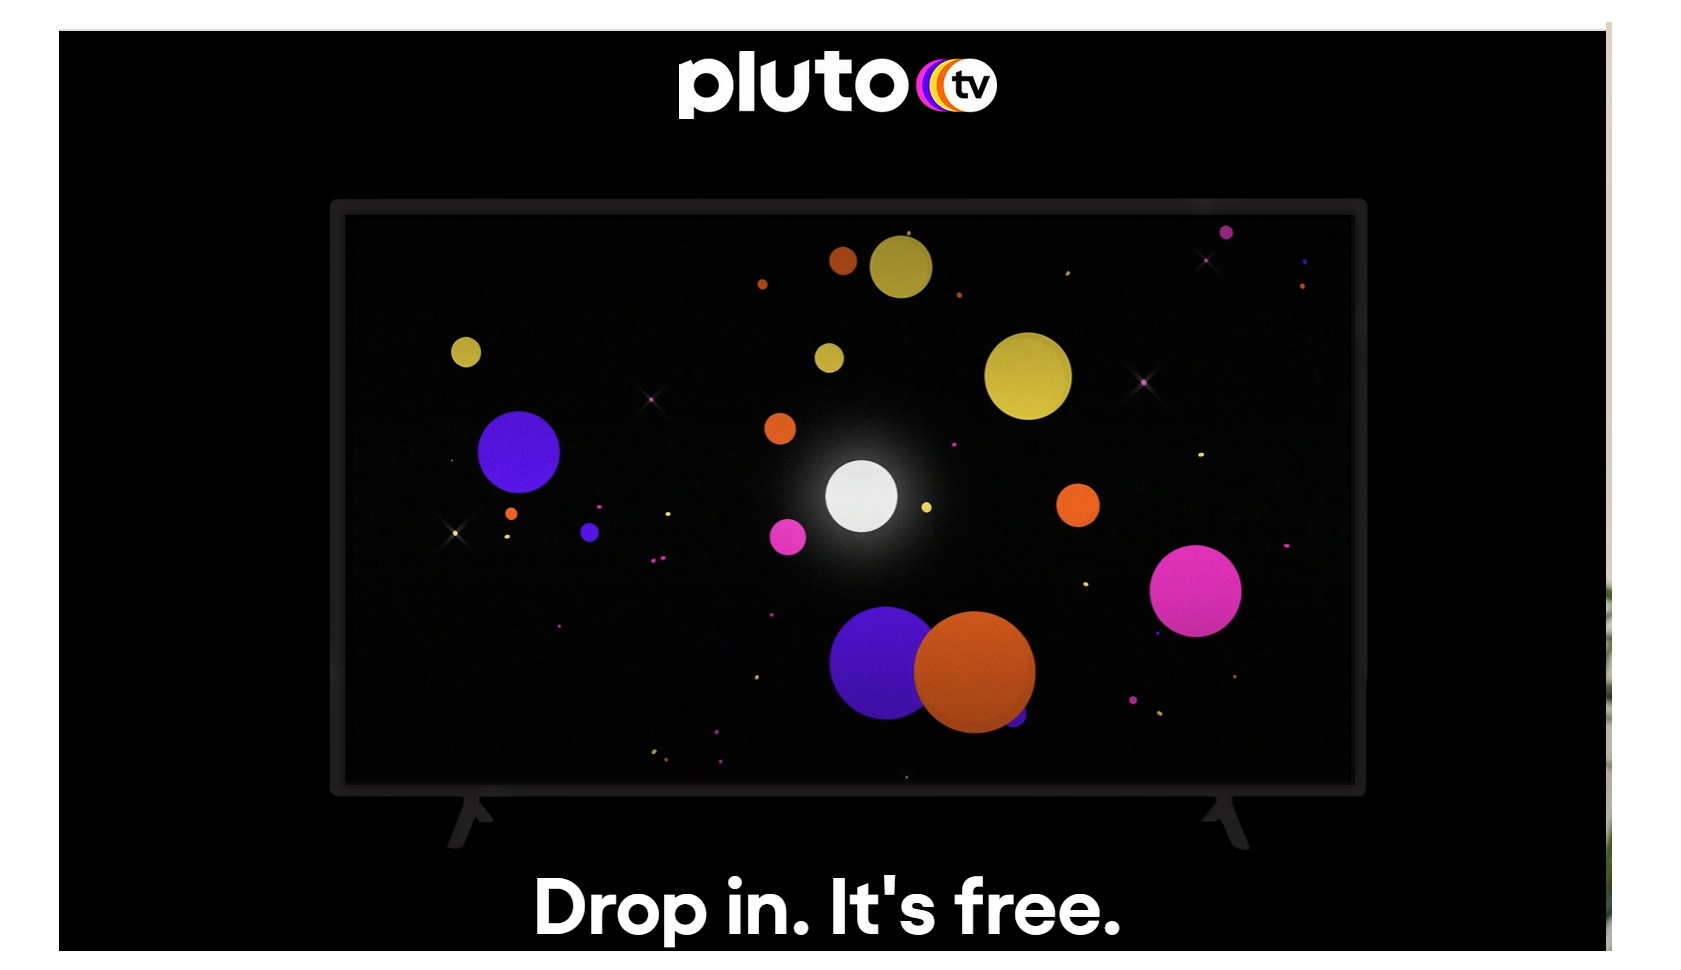 pluto.tv, programapublicidad